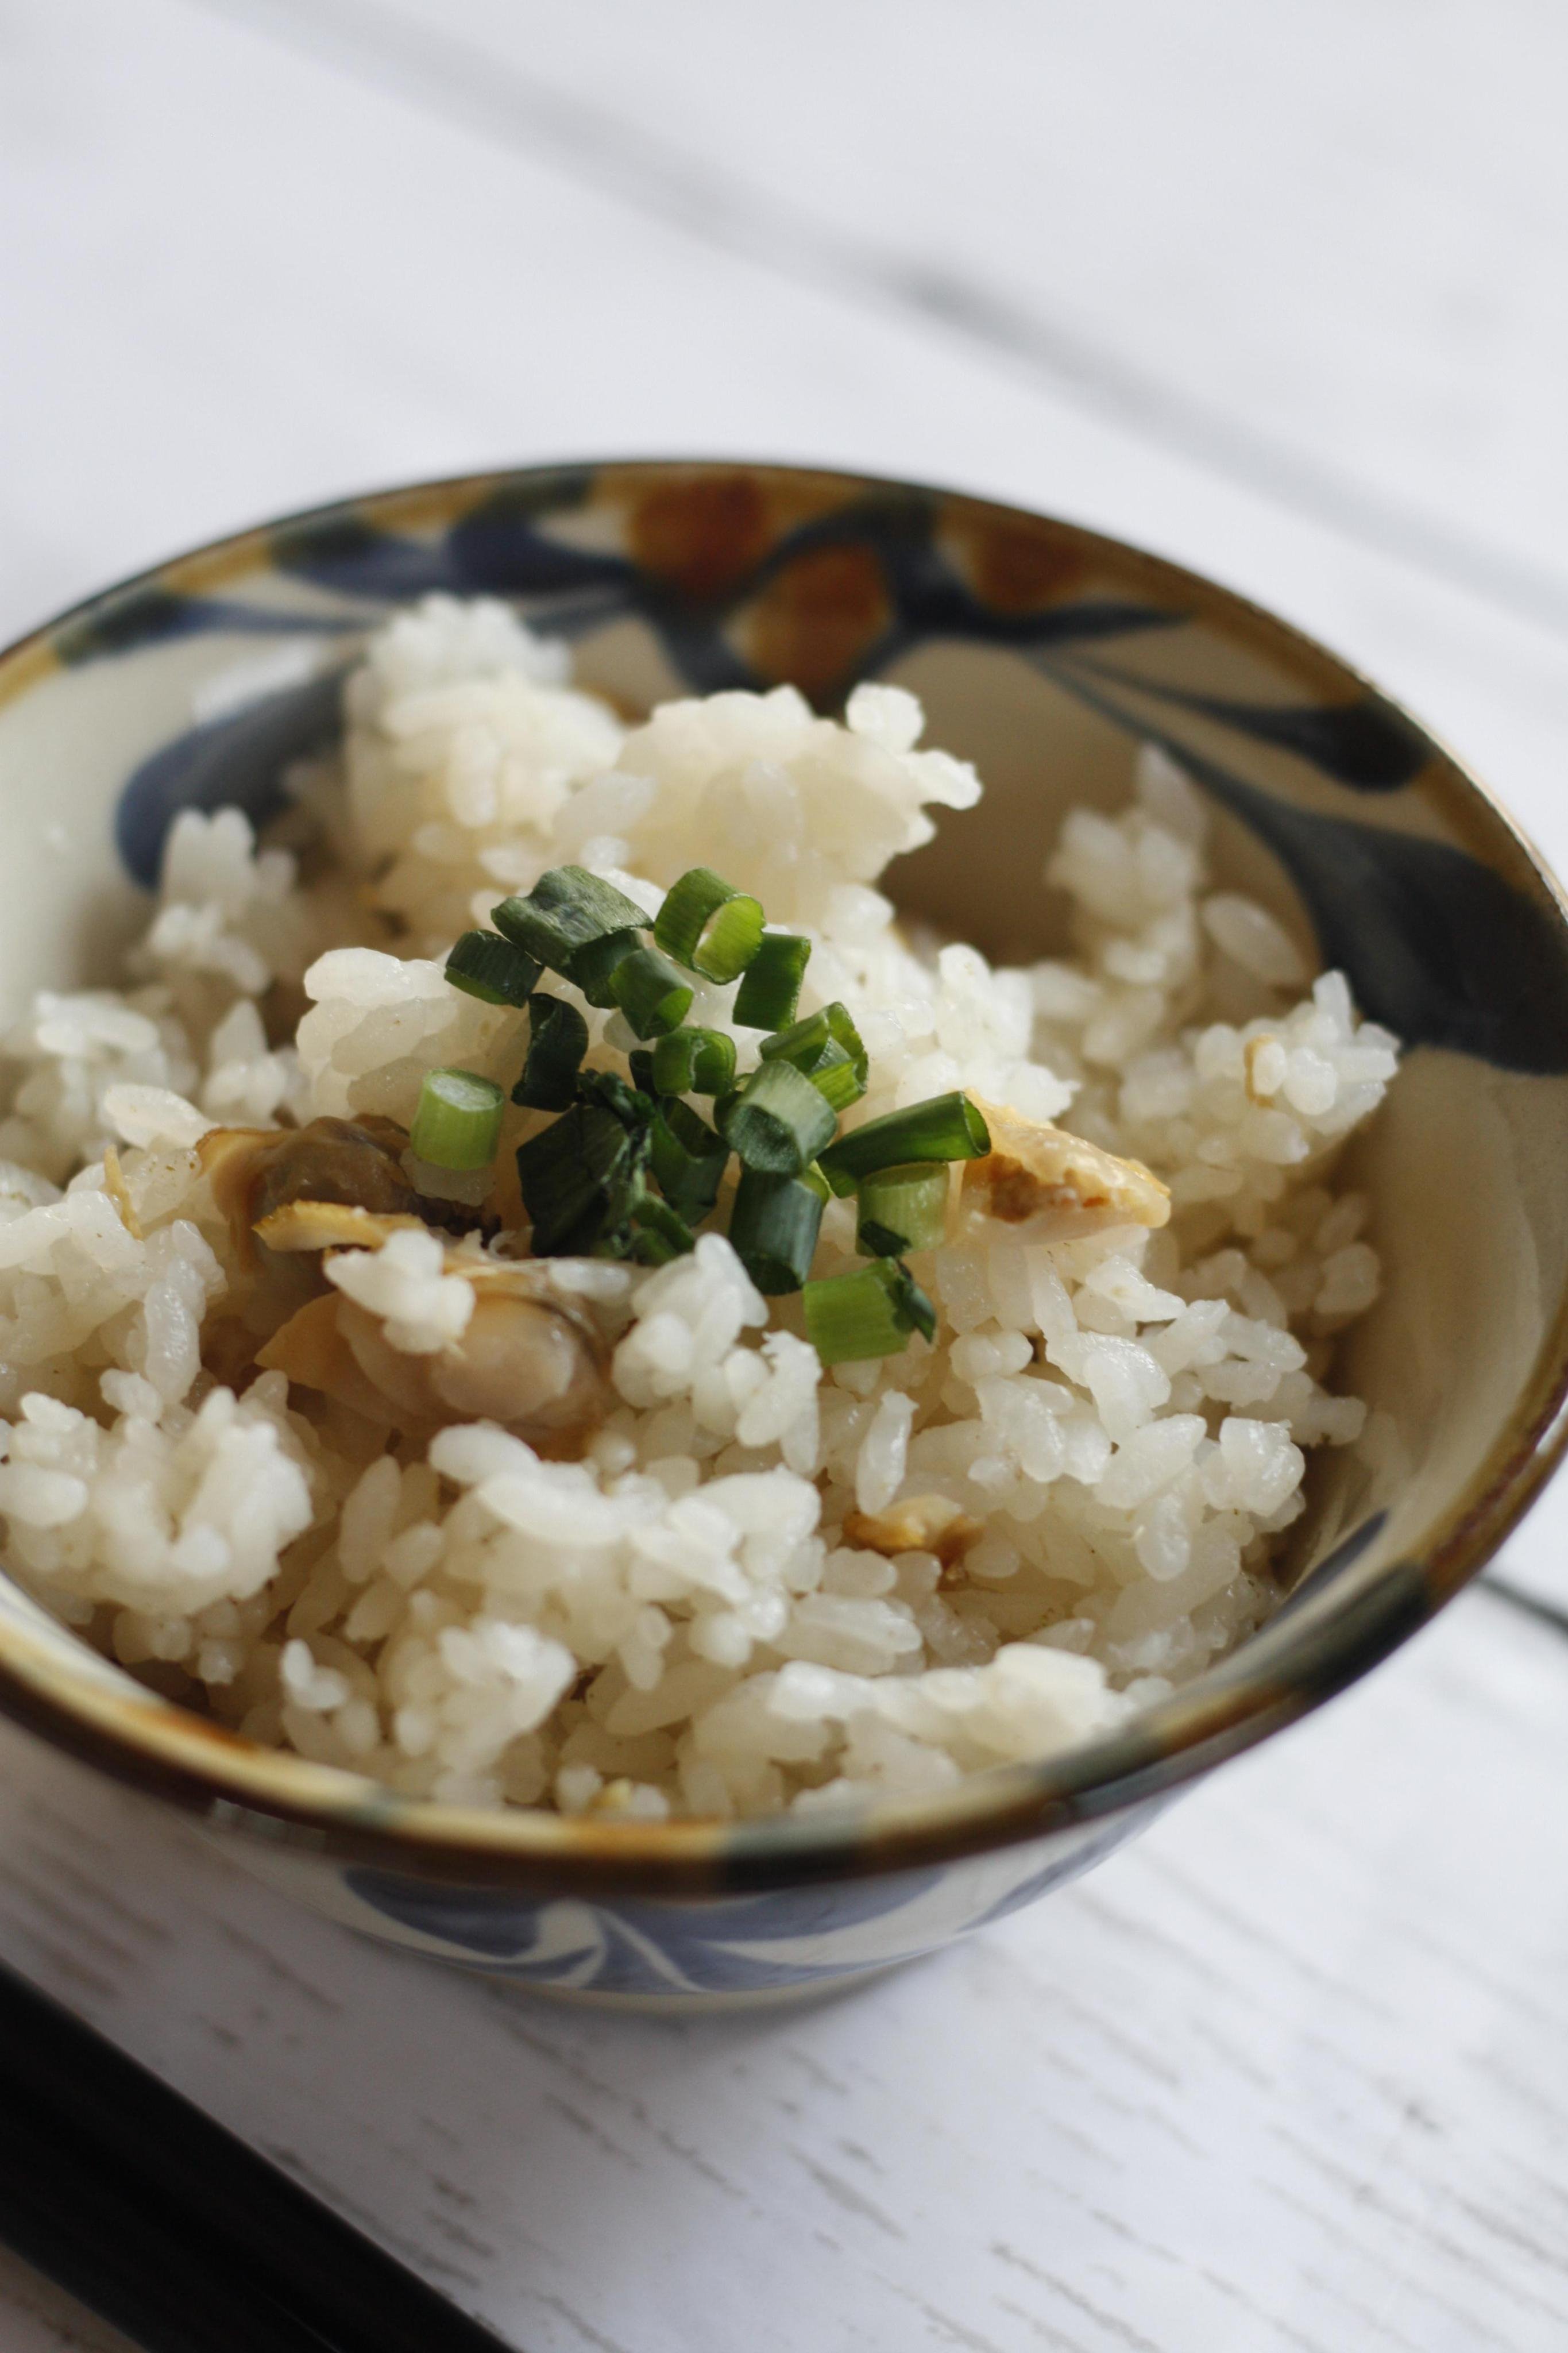 ホンビノス貝の混ぜご飯のレシピ 作り方 小川 典子 料理教室検索サイト クスパ